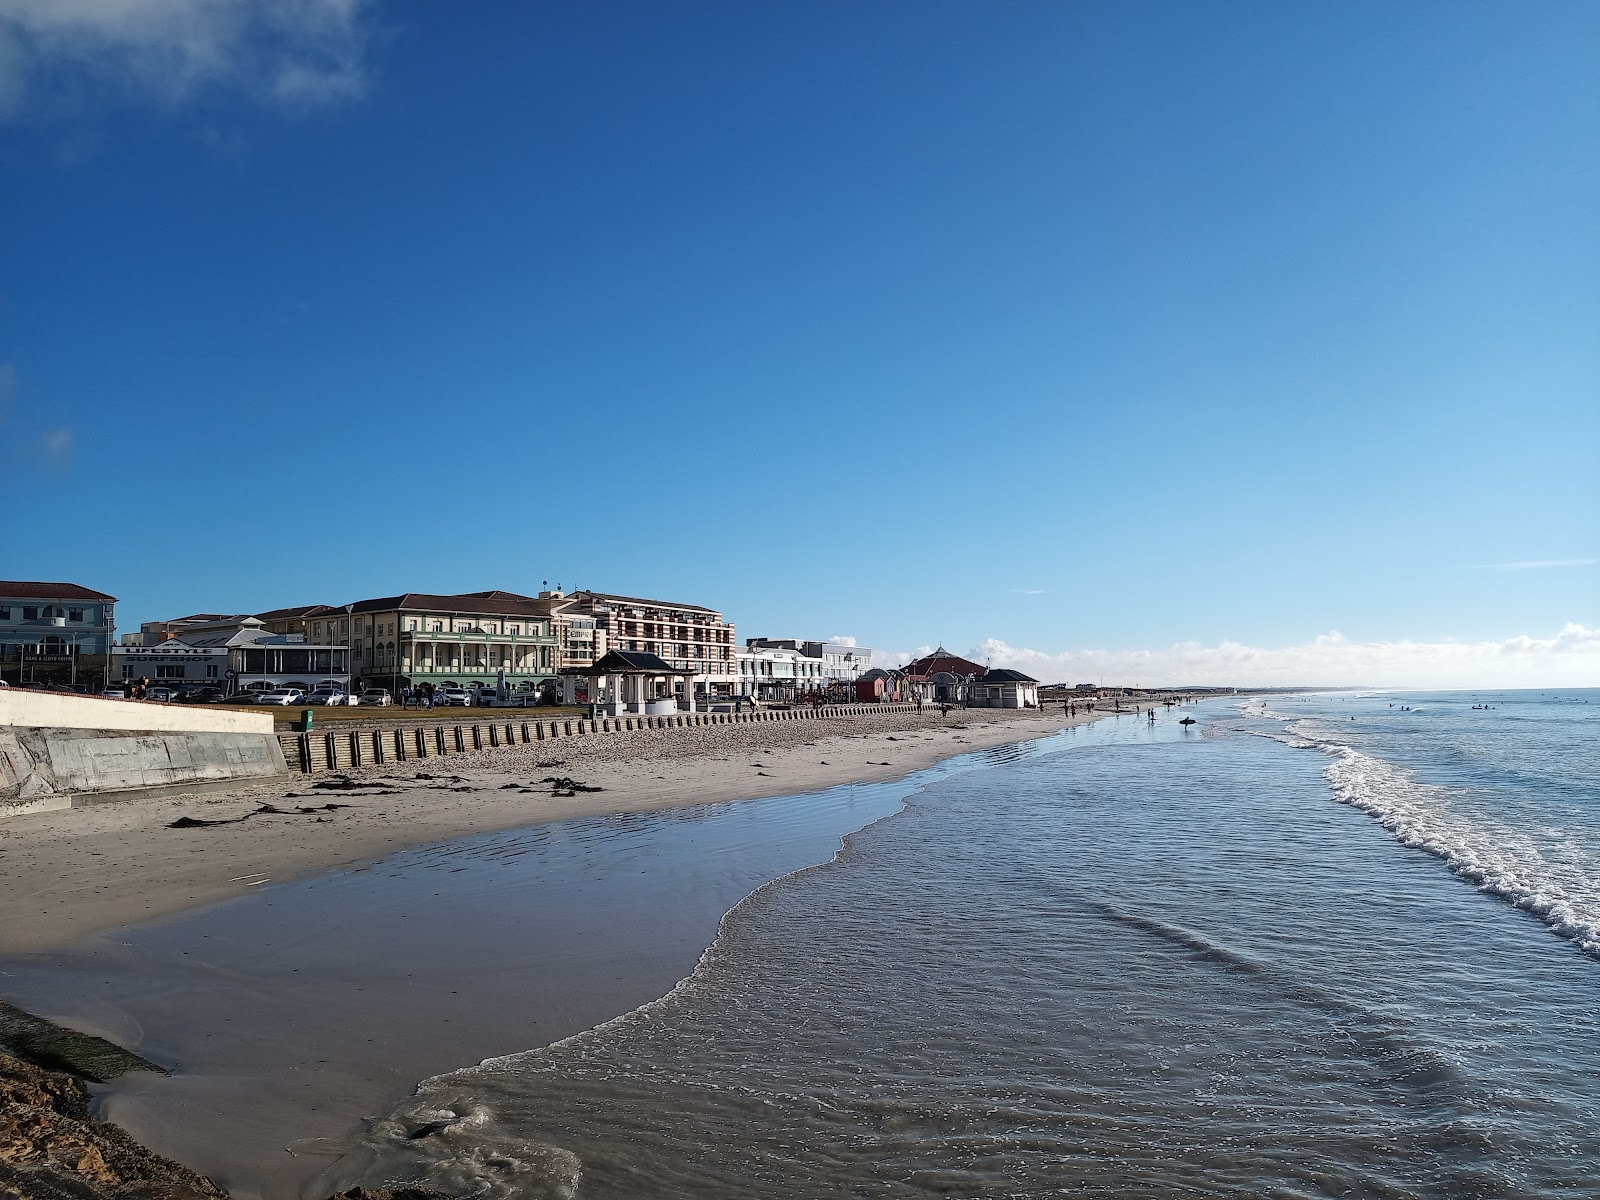 Muizenberg beach'in fotoğrafı parlak kum yüzey ile